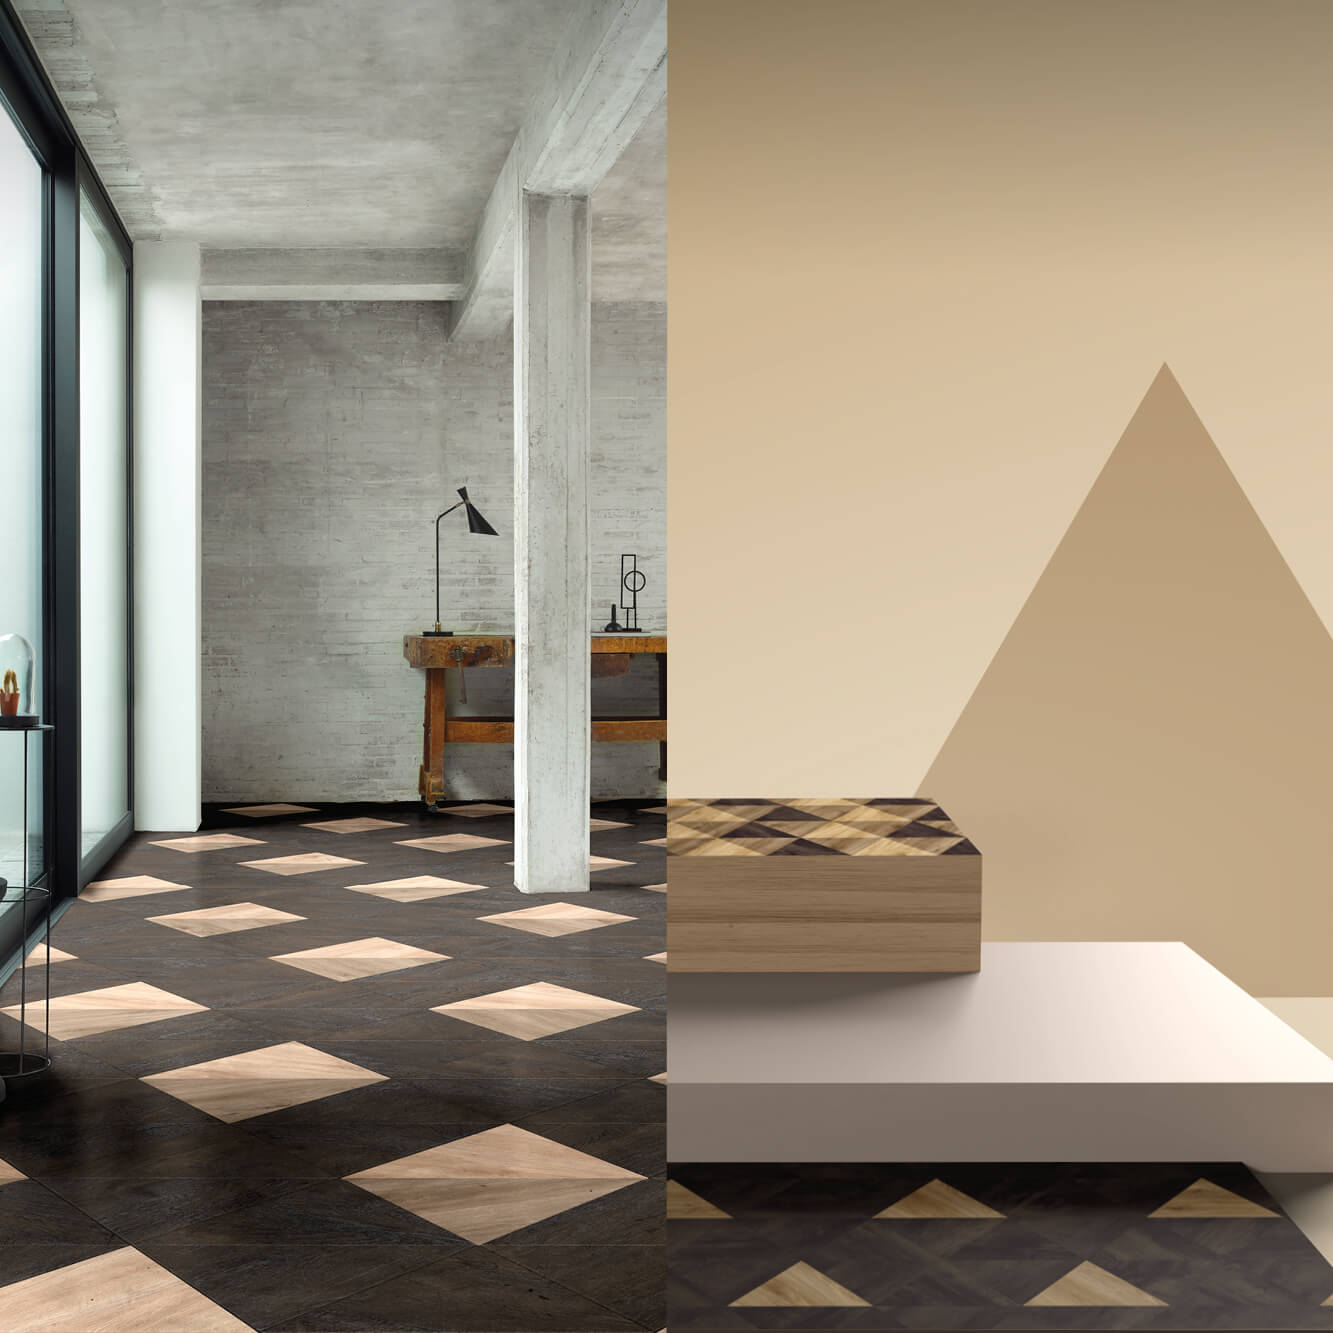 Een van vier afbeeldingen in een diavoorstelling van interieuraanzichten met creatieve vloeroplossingen van Moduleo Moods.